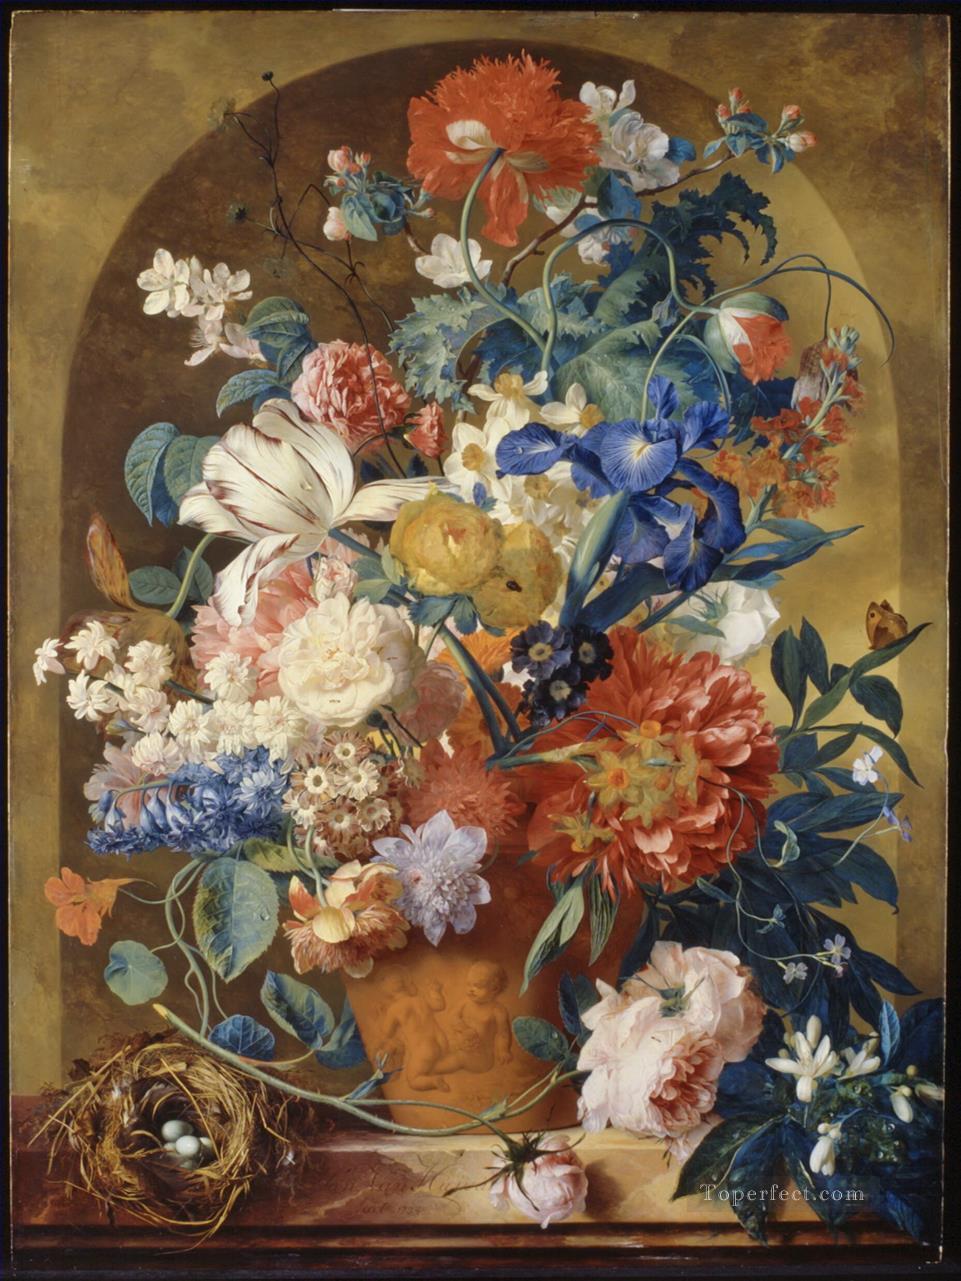 龕の前のテラコッタ花瓶の花の静物画 ヤン・ファン・ホイスム油絵